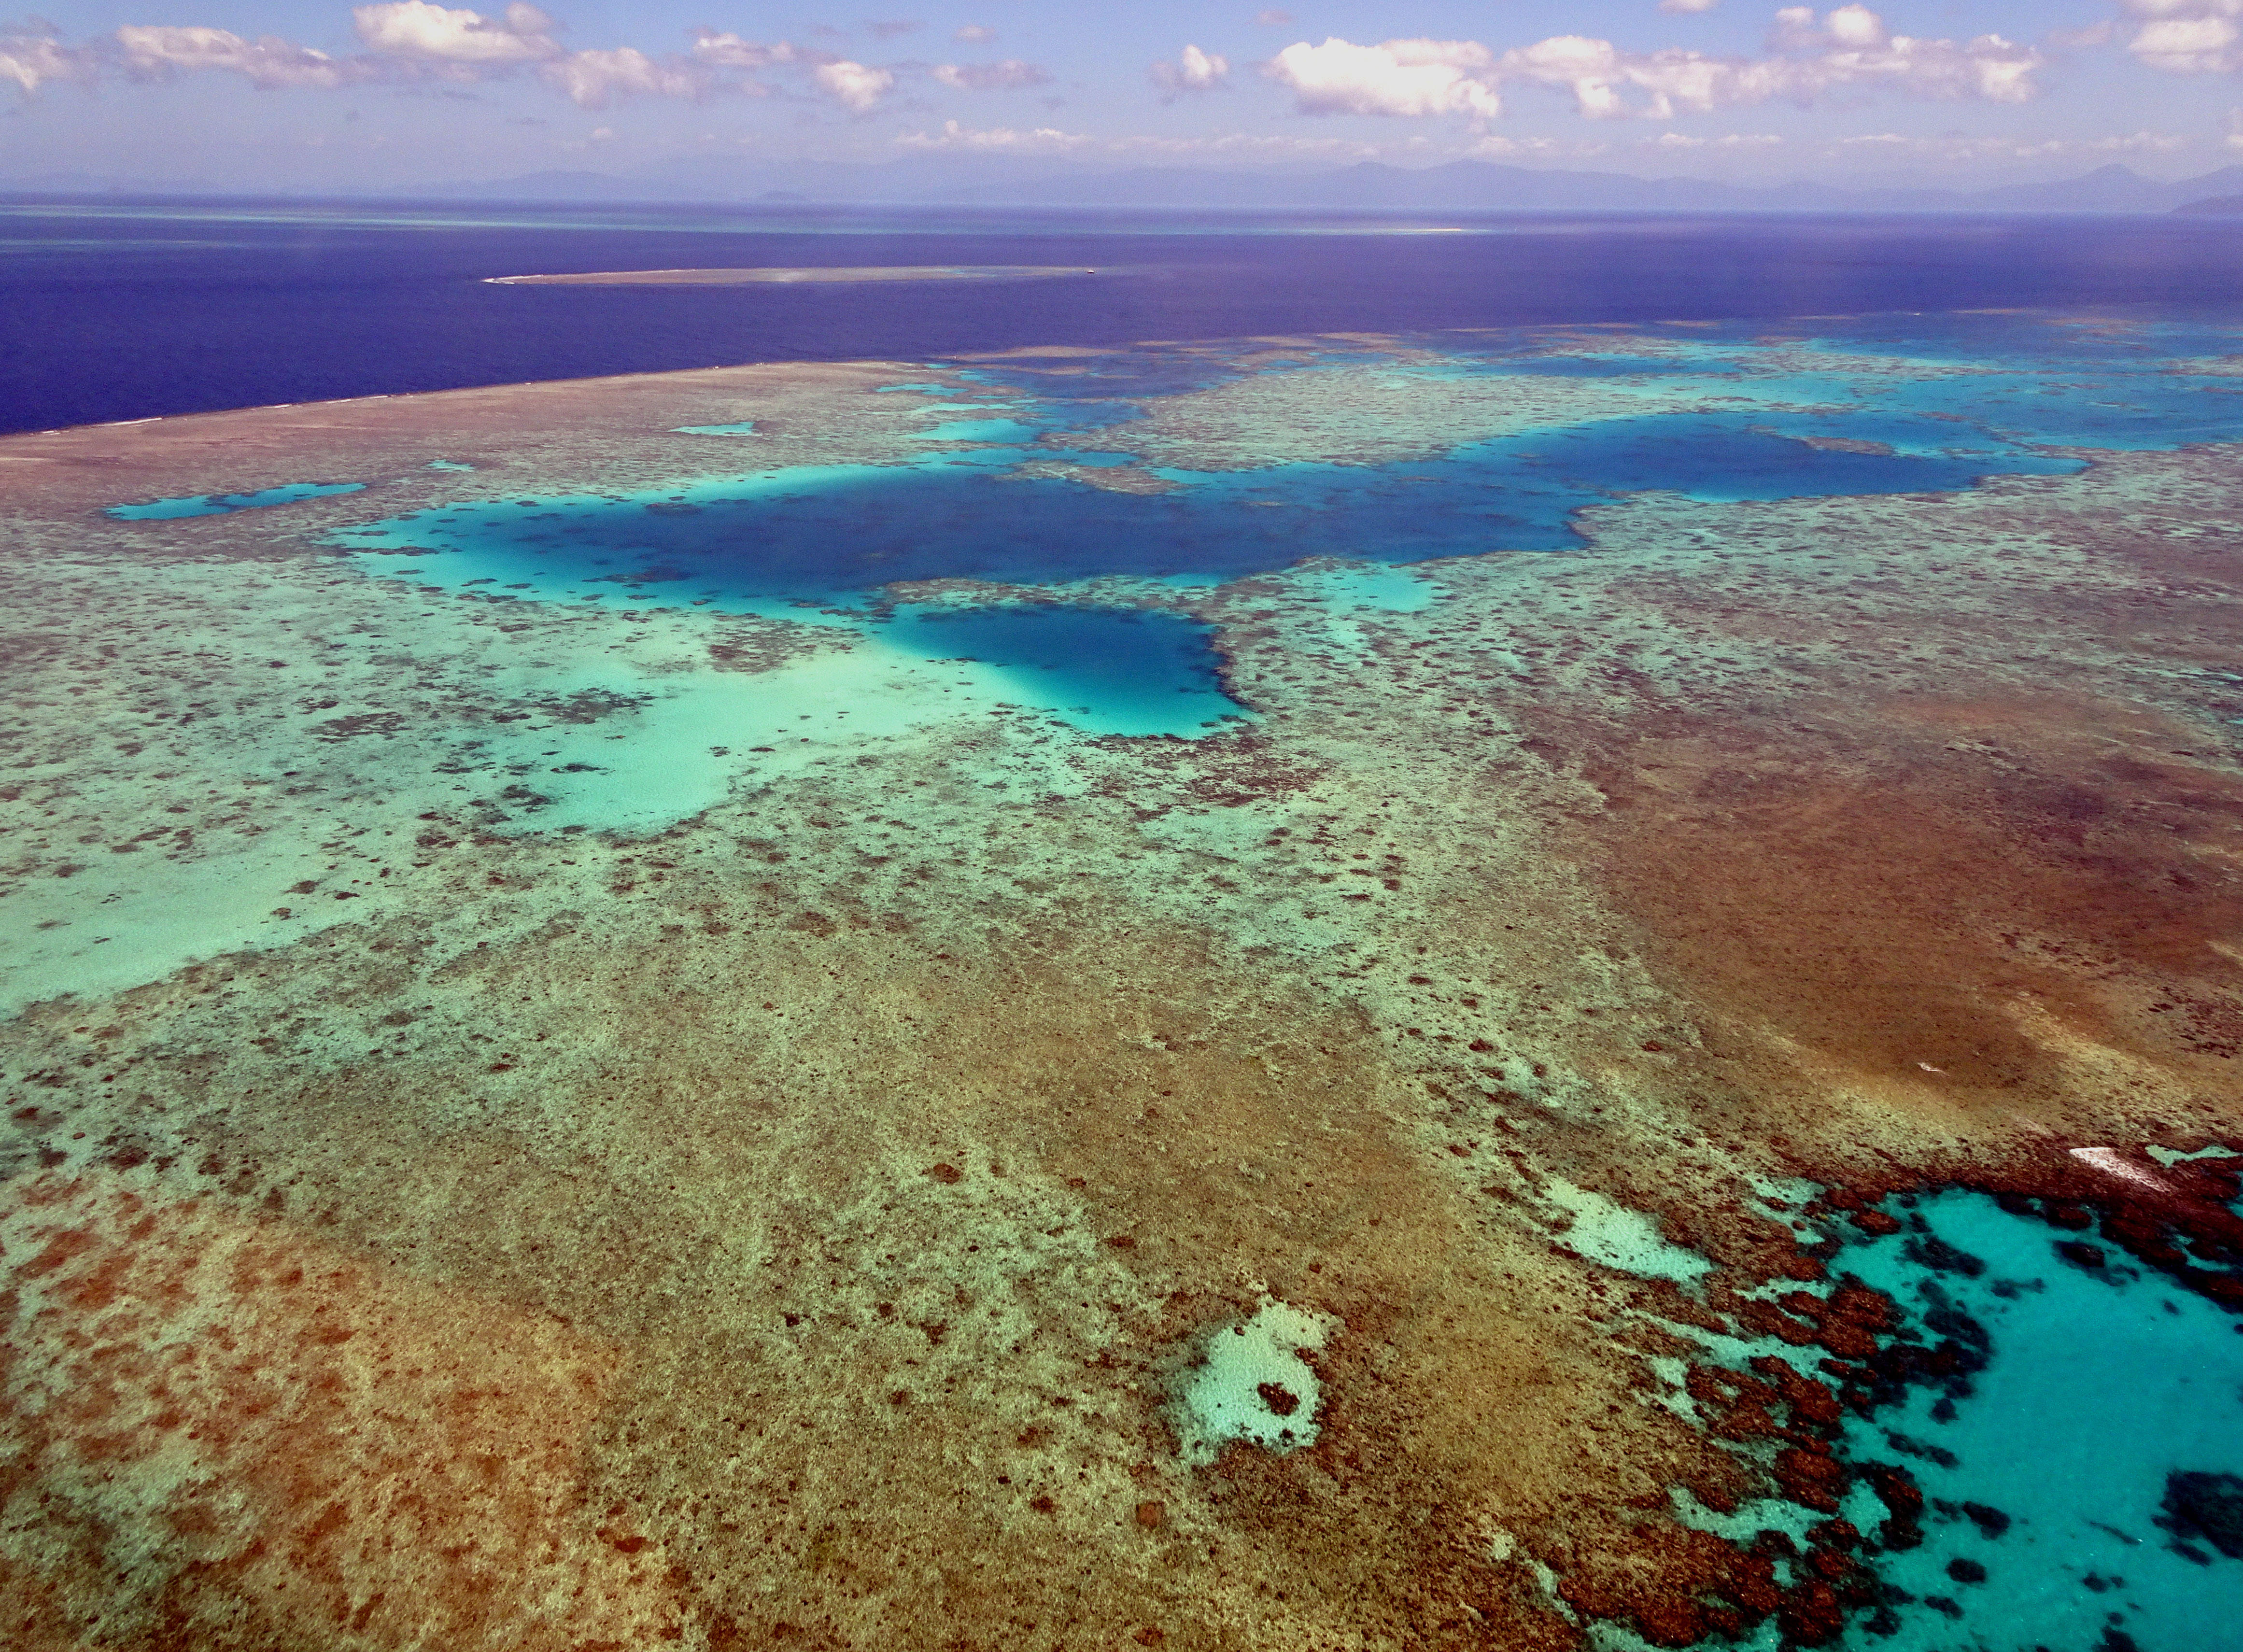 Röpke három év alatt csendben megfőtt a Nagy-korallzátony harmada